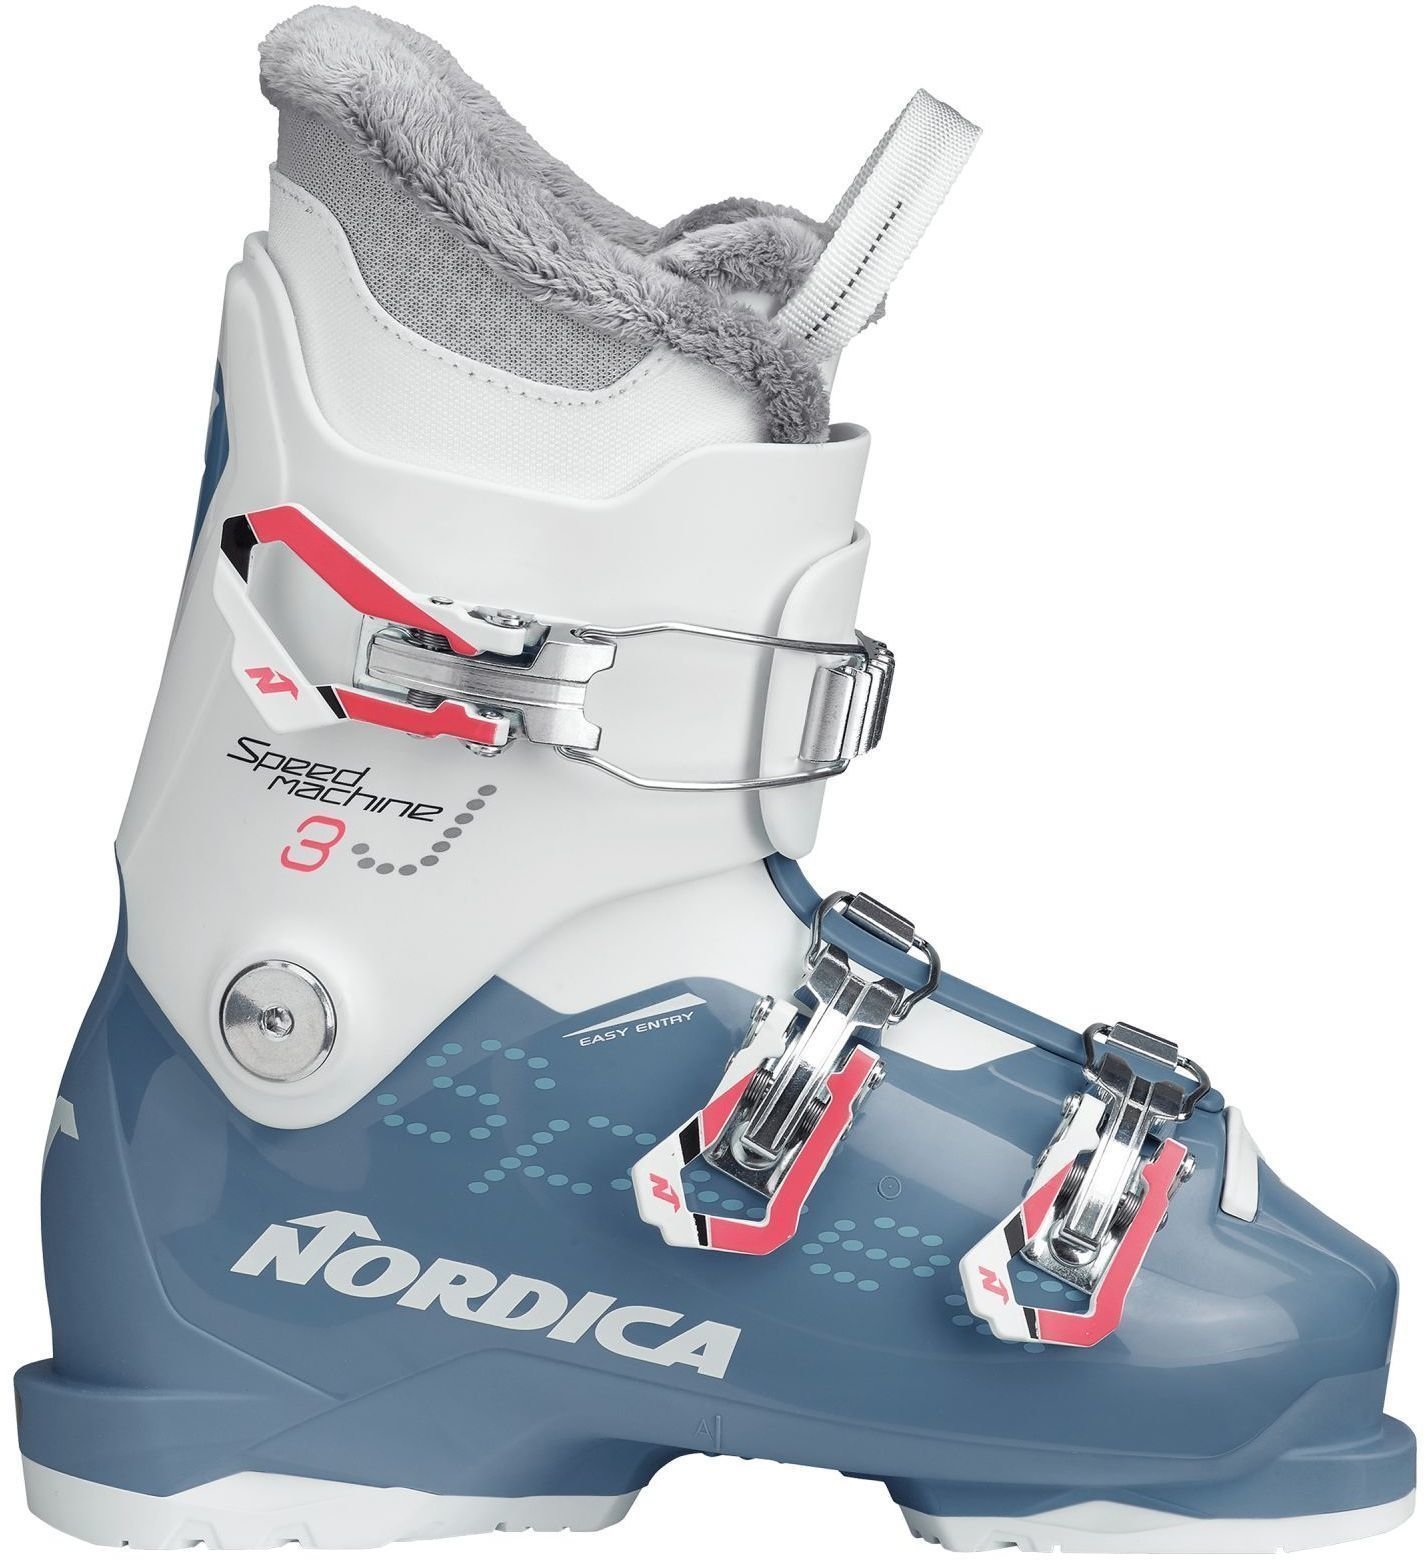 Alpin-Skischuhe Nordica Speedmachine J3 Light Blue/White 240 Alpin-Skischuhe